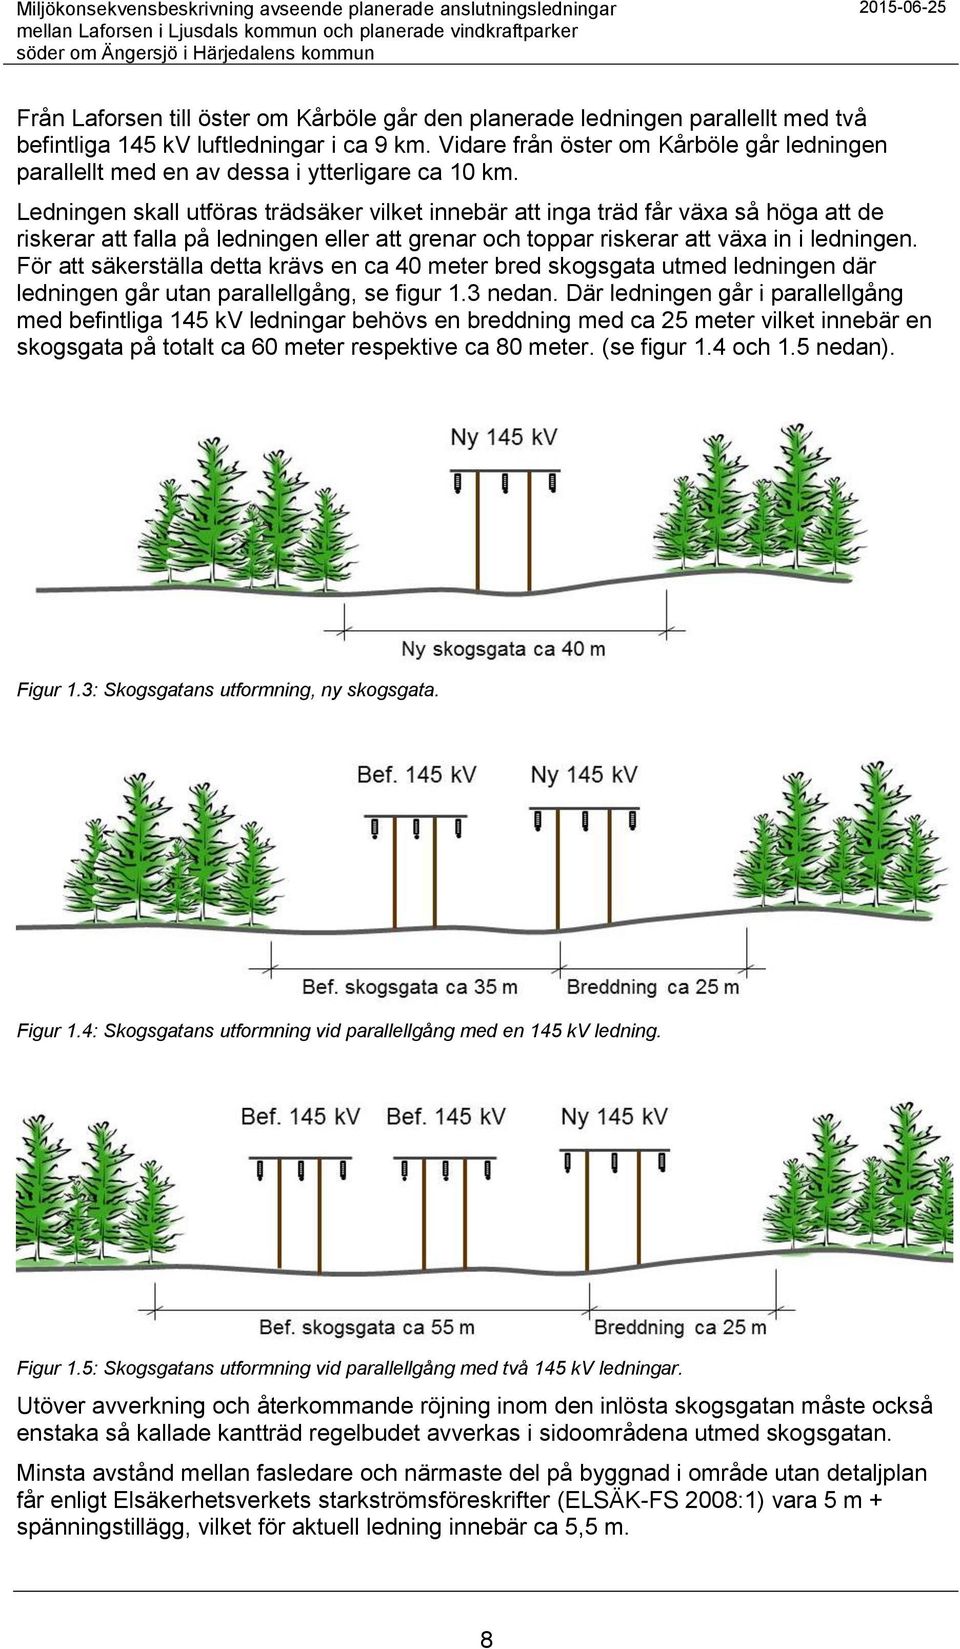 Ledningen skall utföras trädsäker vilket innebär att inga träd får växa så höga att de riskerar att falla på ledningen eller att grenar och toppar riskerar att växa in i ledningen.